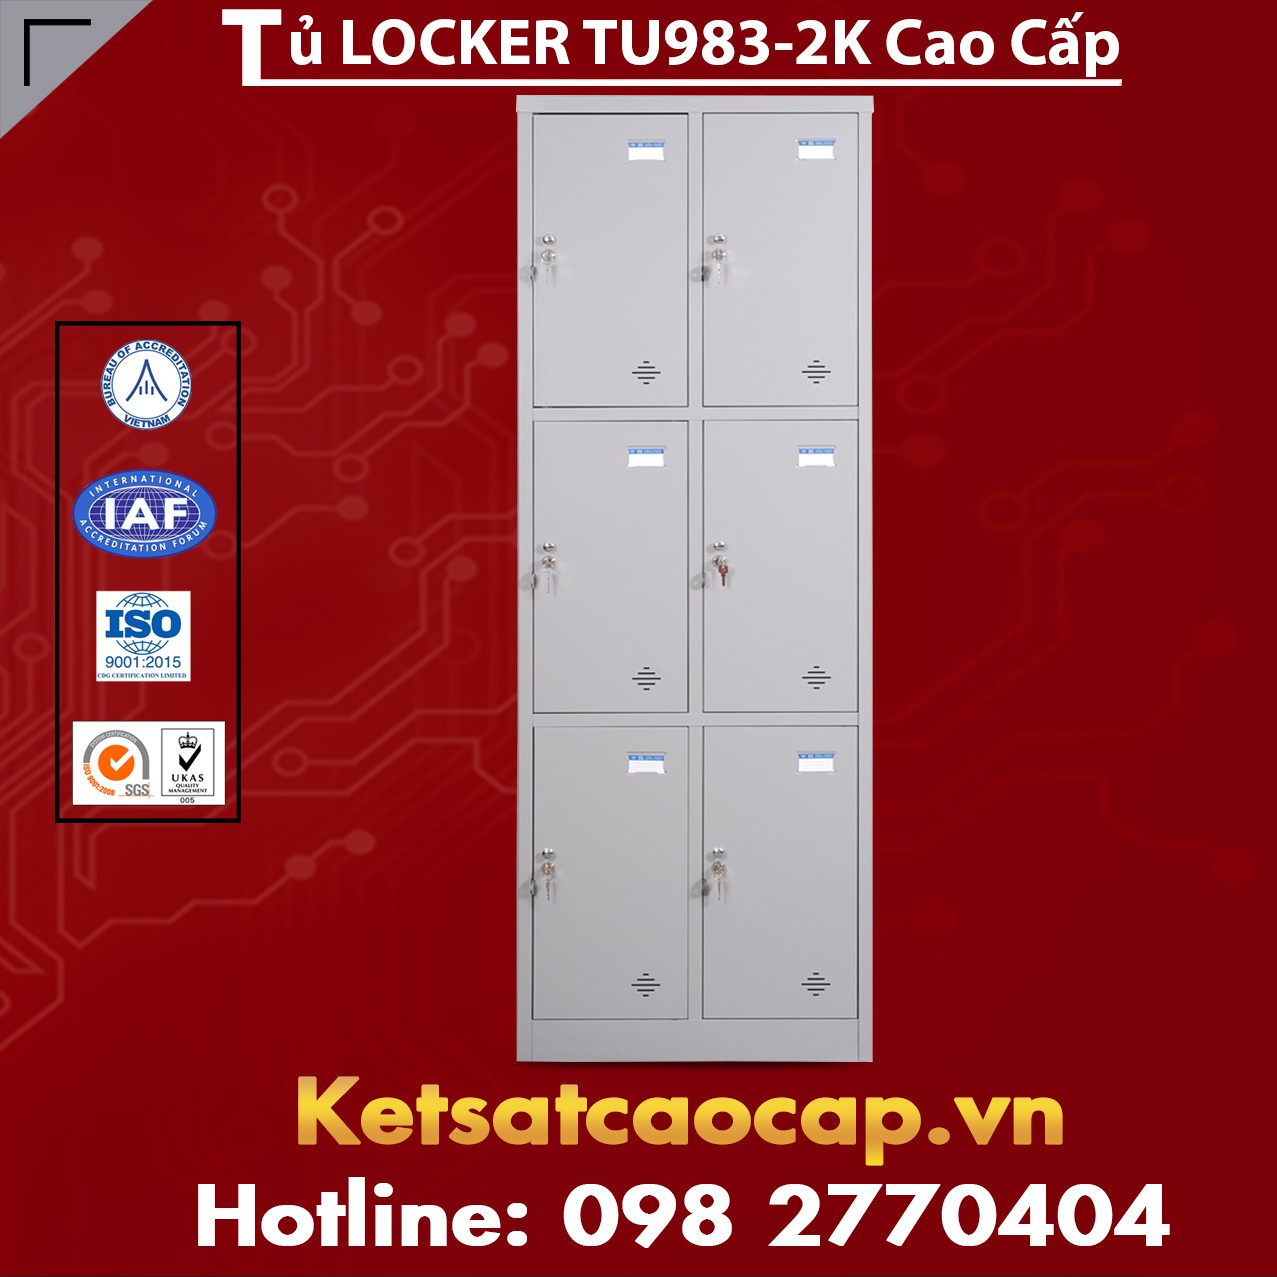 Tủ Locker TU983-2K